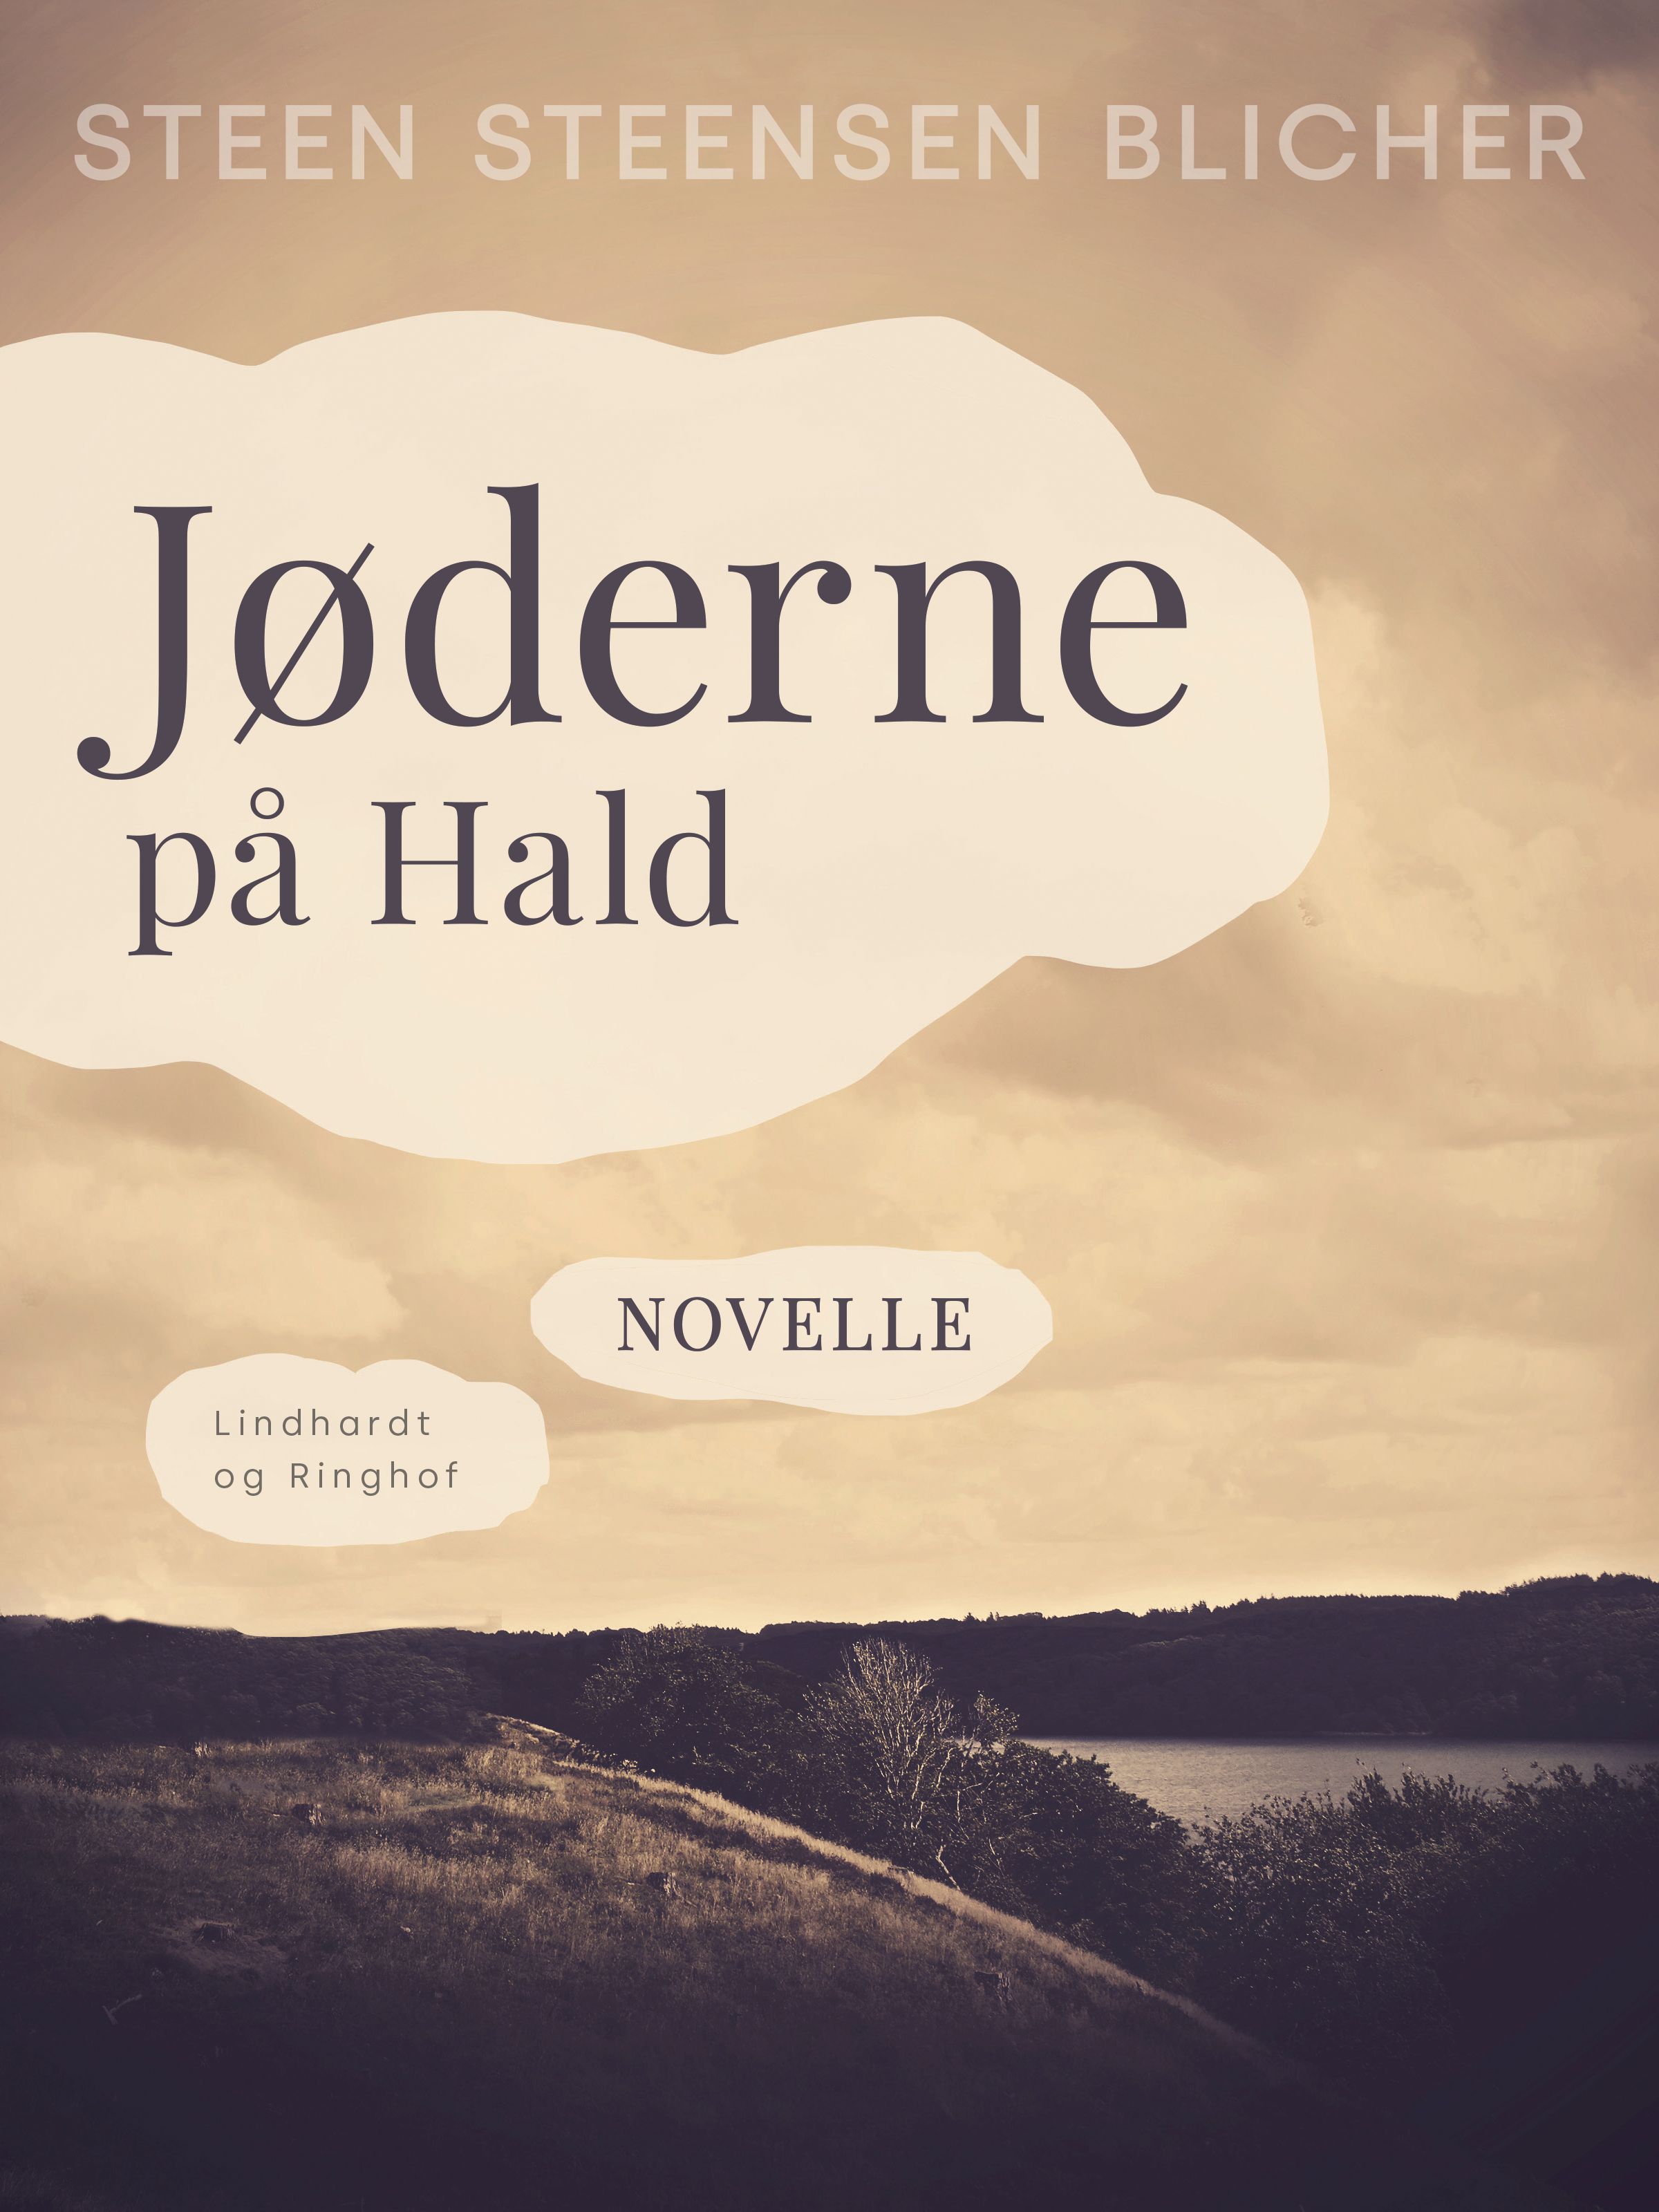 Jøderne på Hald, e-bok av Steen Steensen Blicher